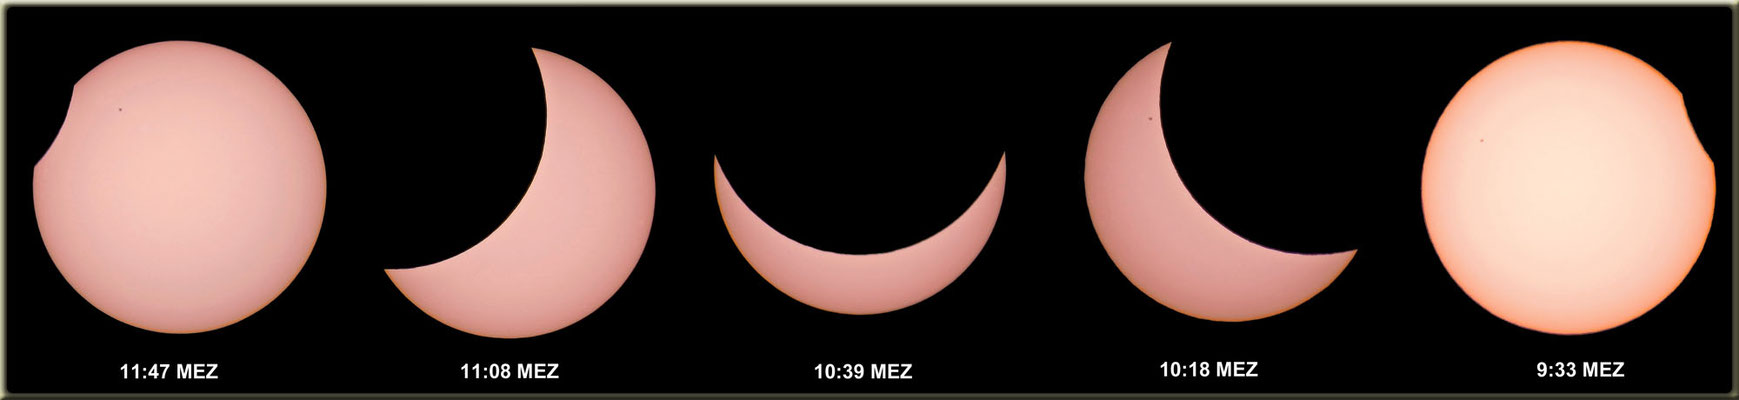 Partielle Sonnenfinsternis am 20. März 2015.  Aufnahme mit Canon PowerShot SX 50 HS mit Sonnenfilter ND3,8.